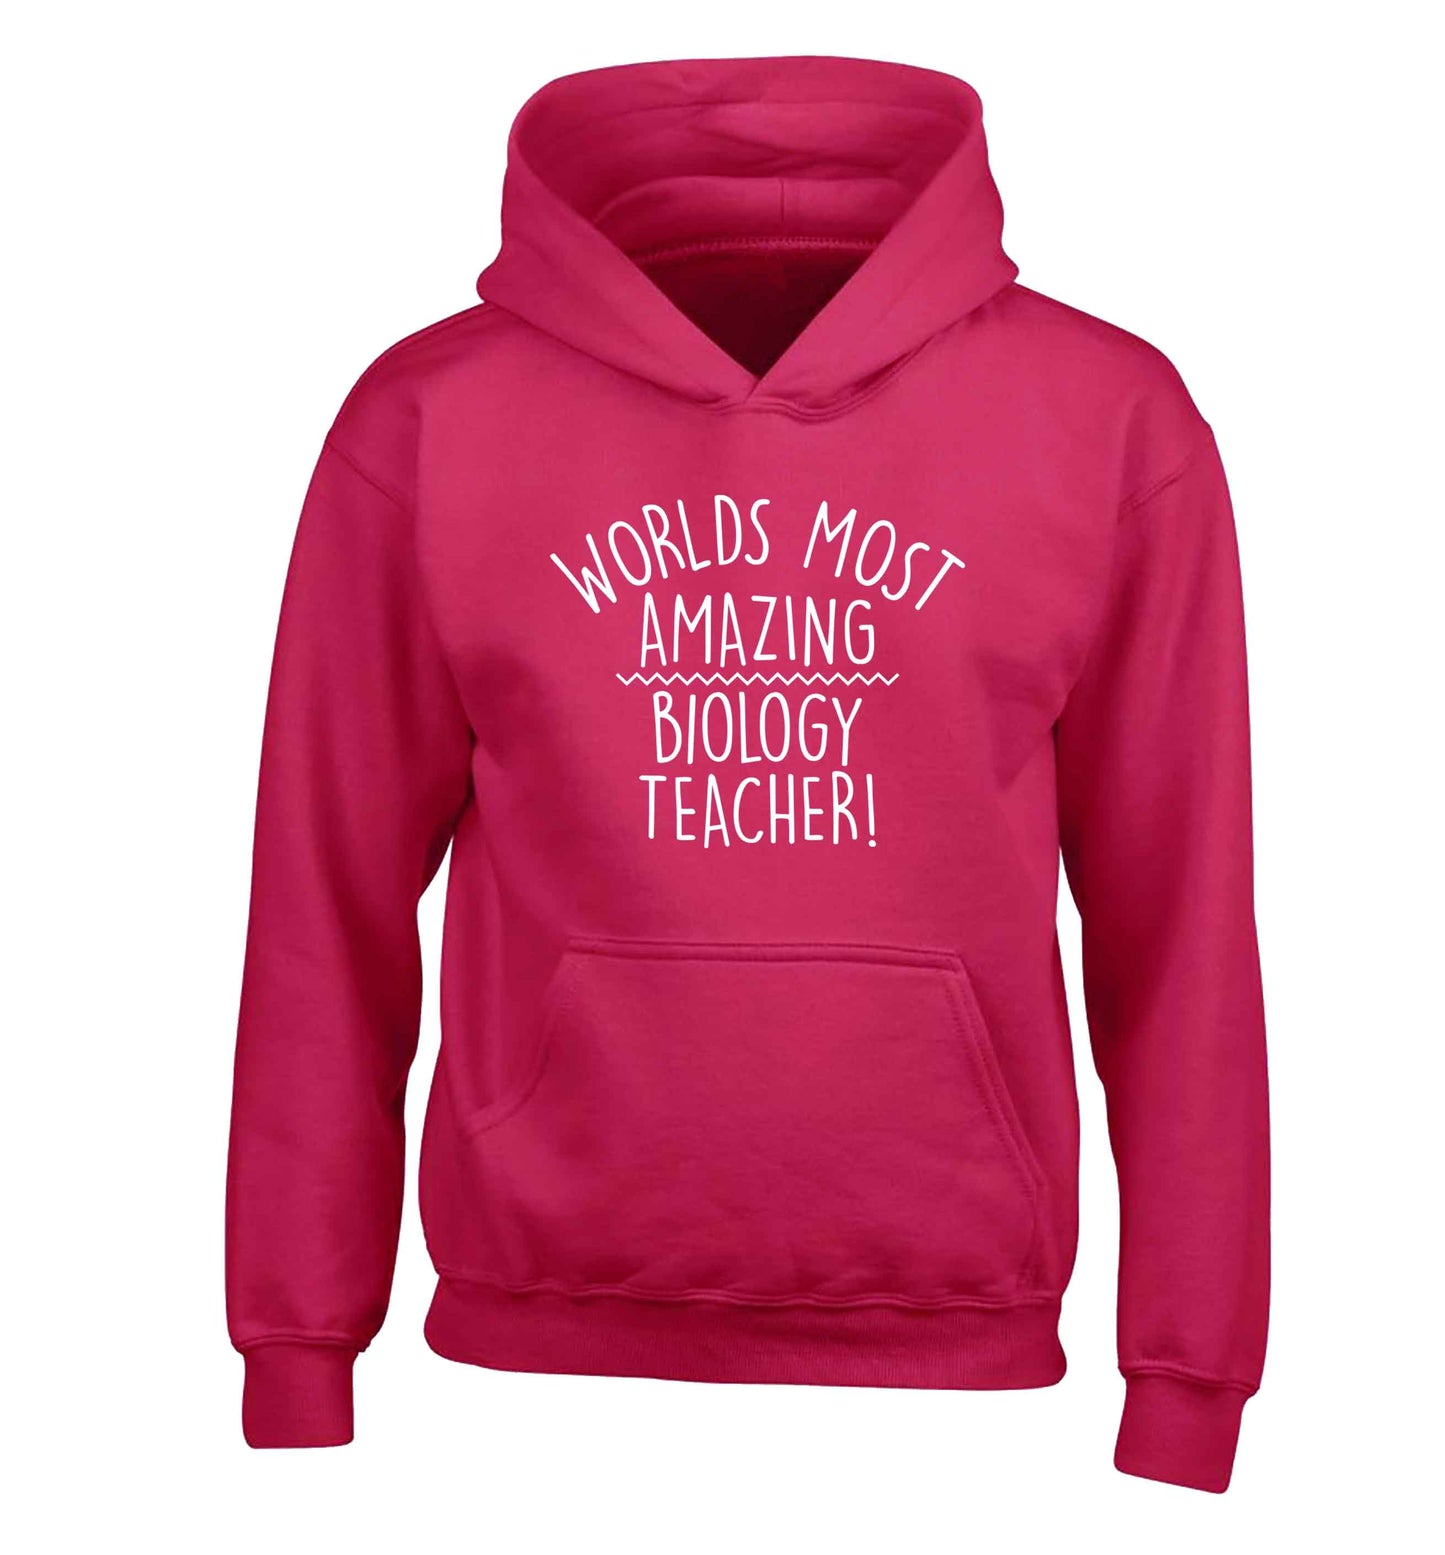 Worlds most amazing biology teacher children's pink hoodie 12-13 Years